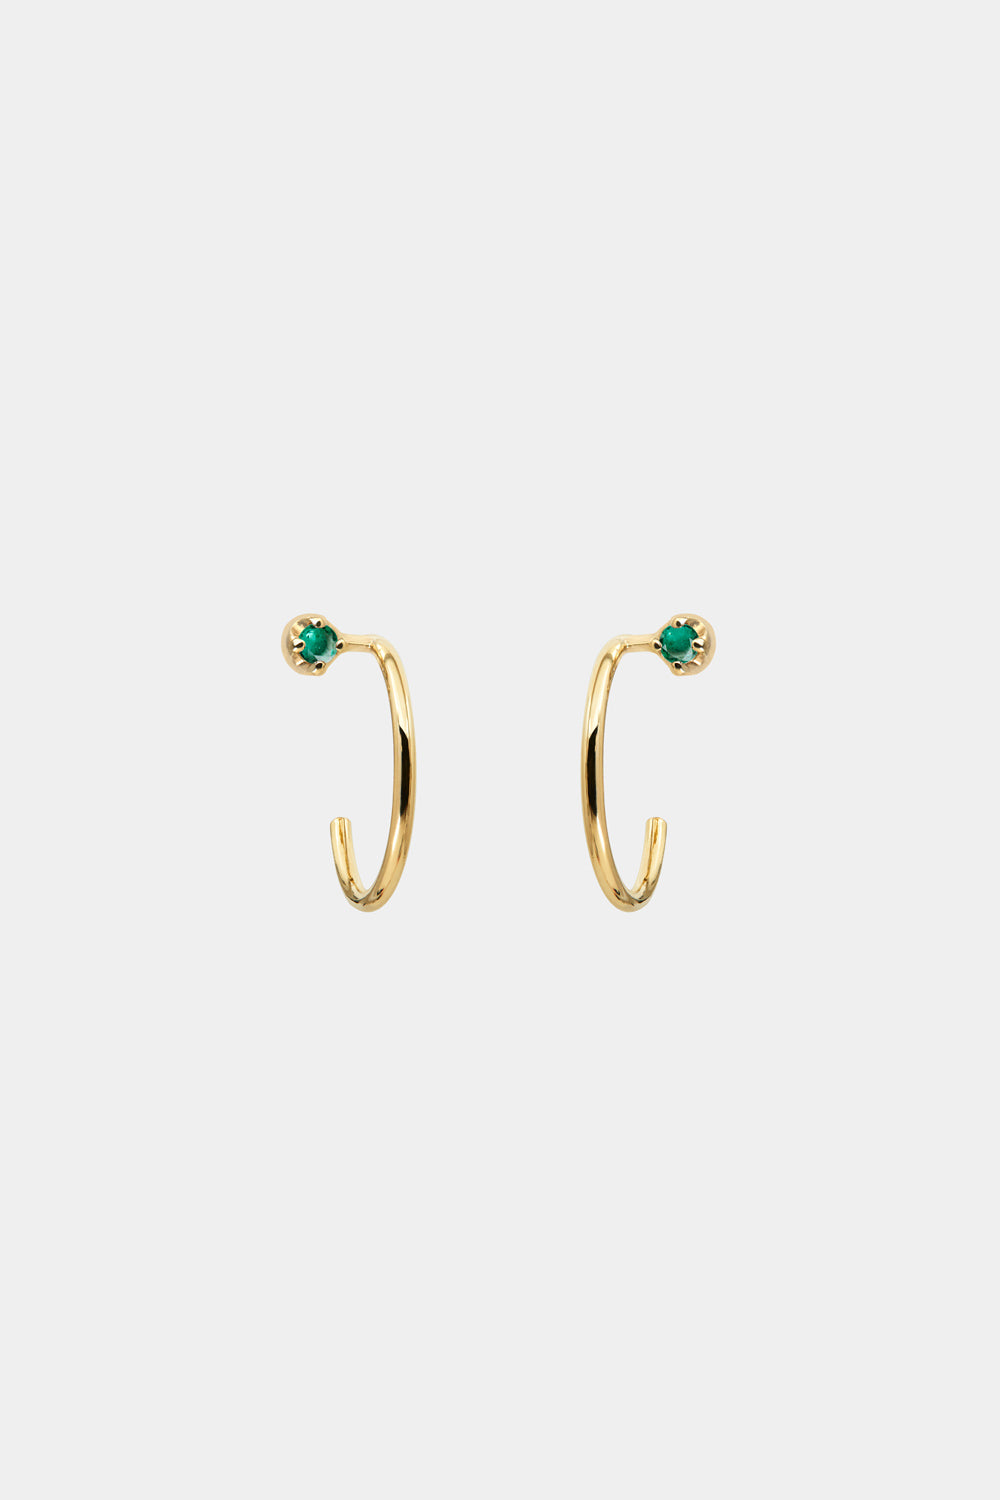 Mini Lara Emerald Hoop Earrings | 9K Yellow Gold